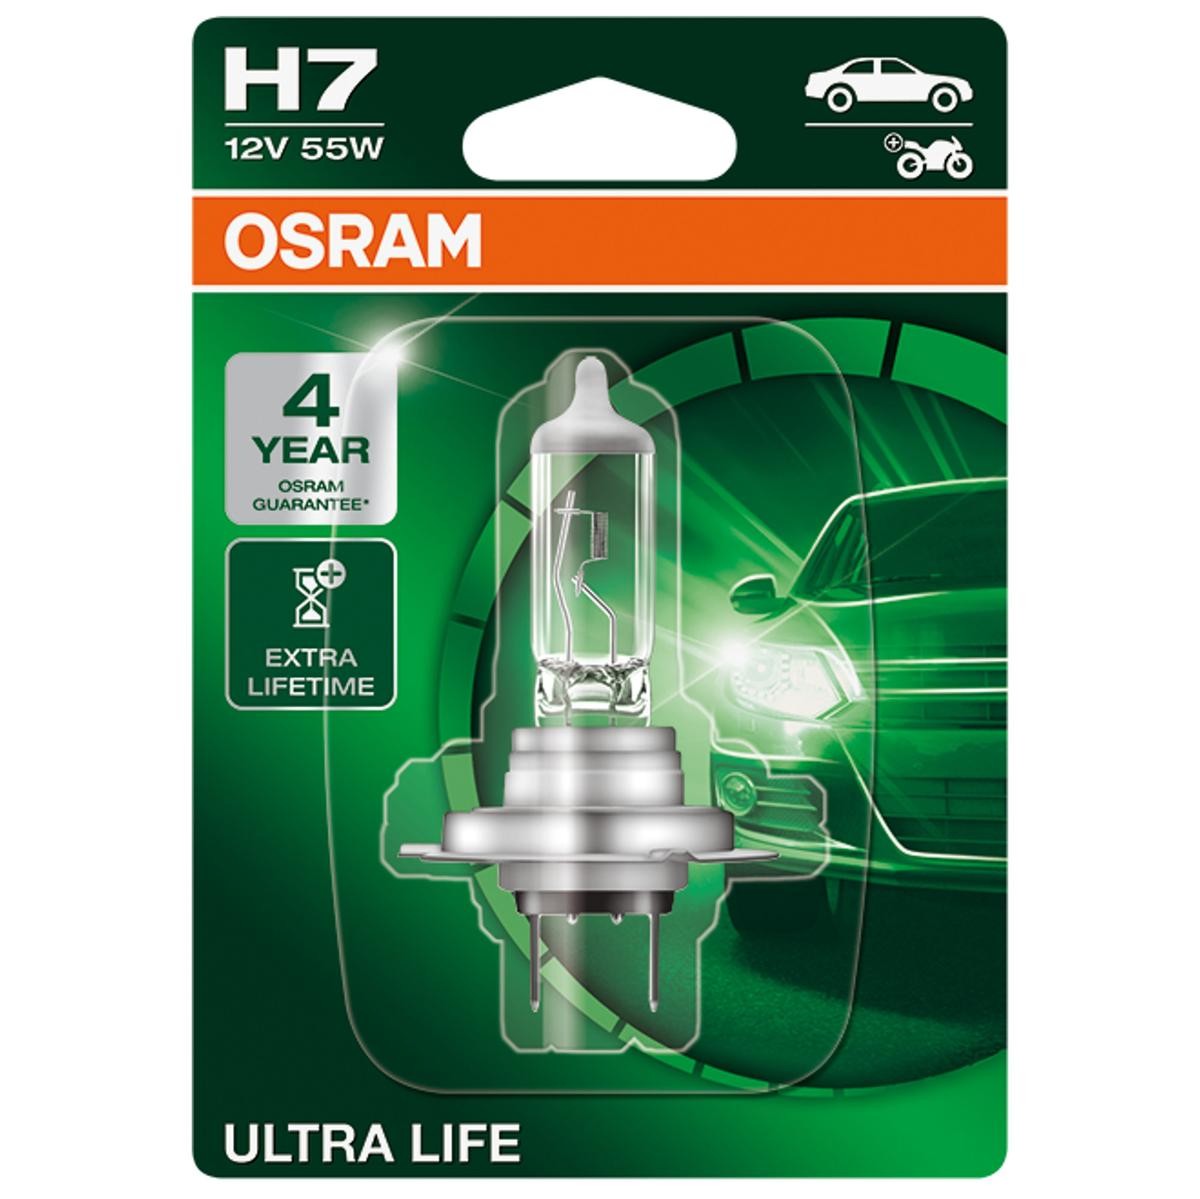 64210CLC OSRAM H7 12V 55W PX26d, 4200K, Halogène, CLASSIC Ampoule,  projecteur longue portée